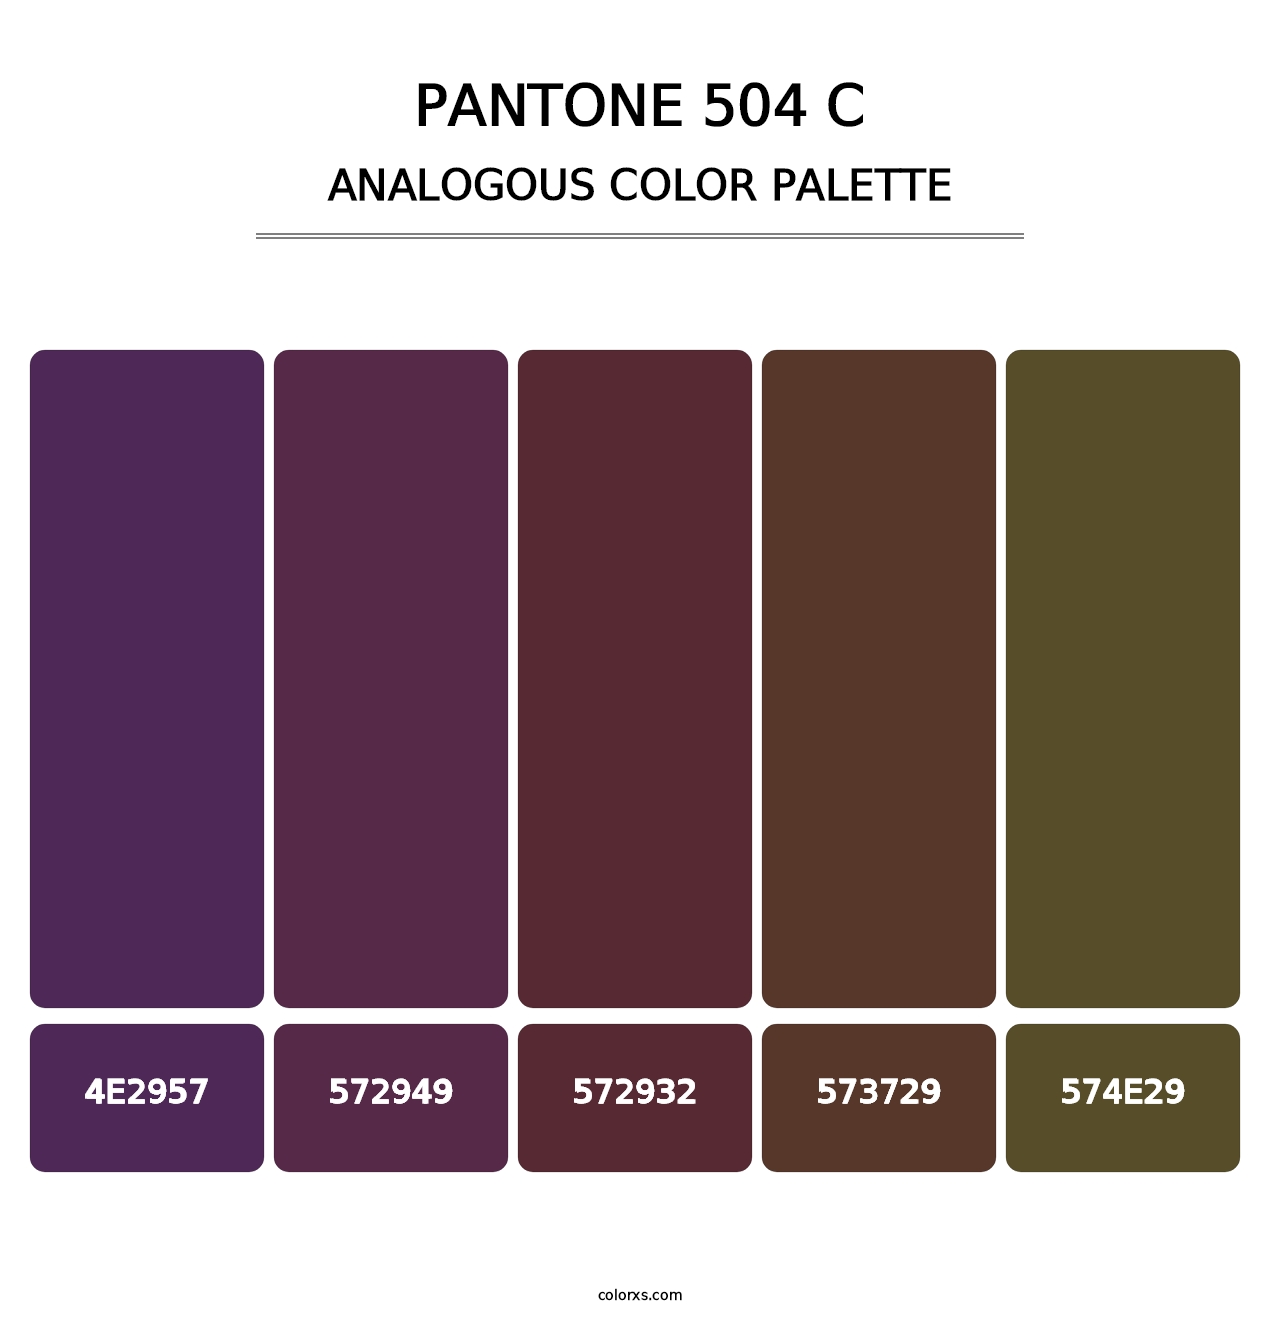 PANTONE 504 C - Analogous Color Palette